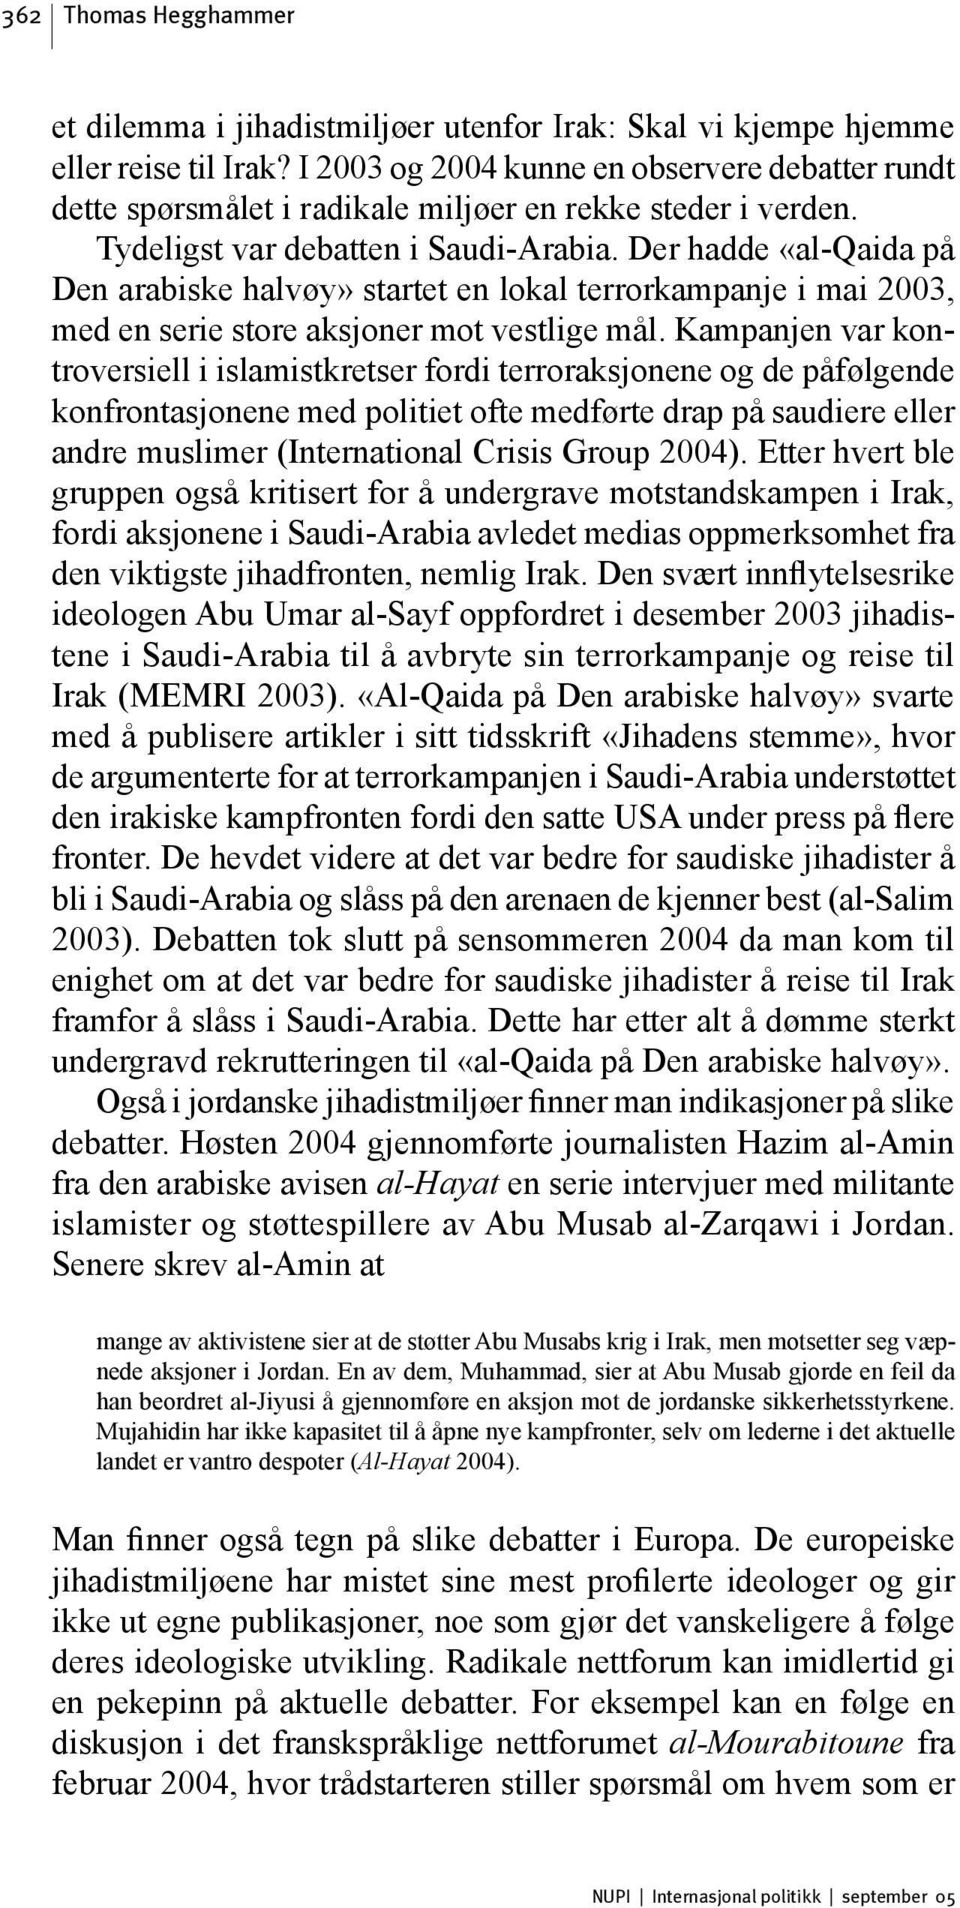 Der hadde «al-qaida på Den arabiske halvøy» startet en lokal terrorkampanje i mai 2003, med en serie store aksjoner mot vestlige mål.